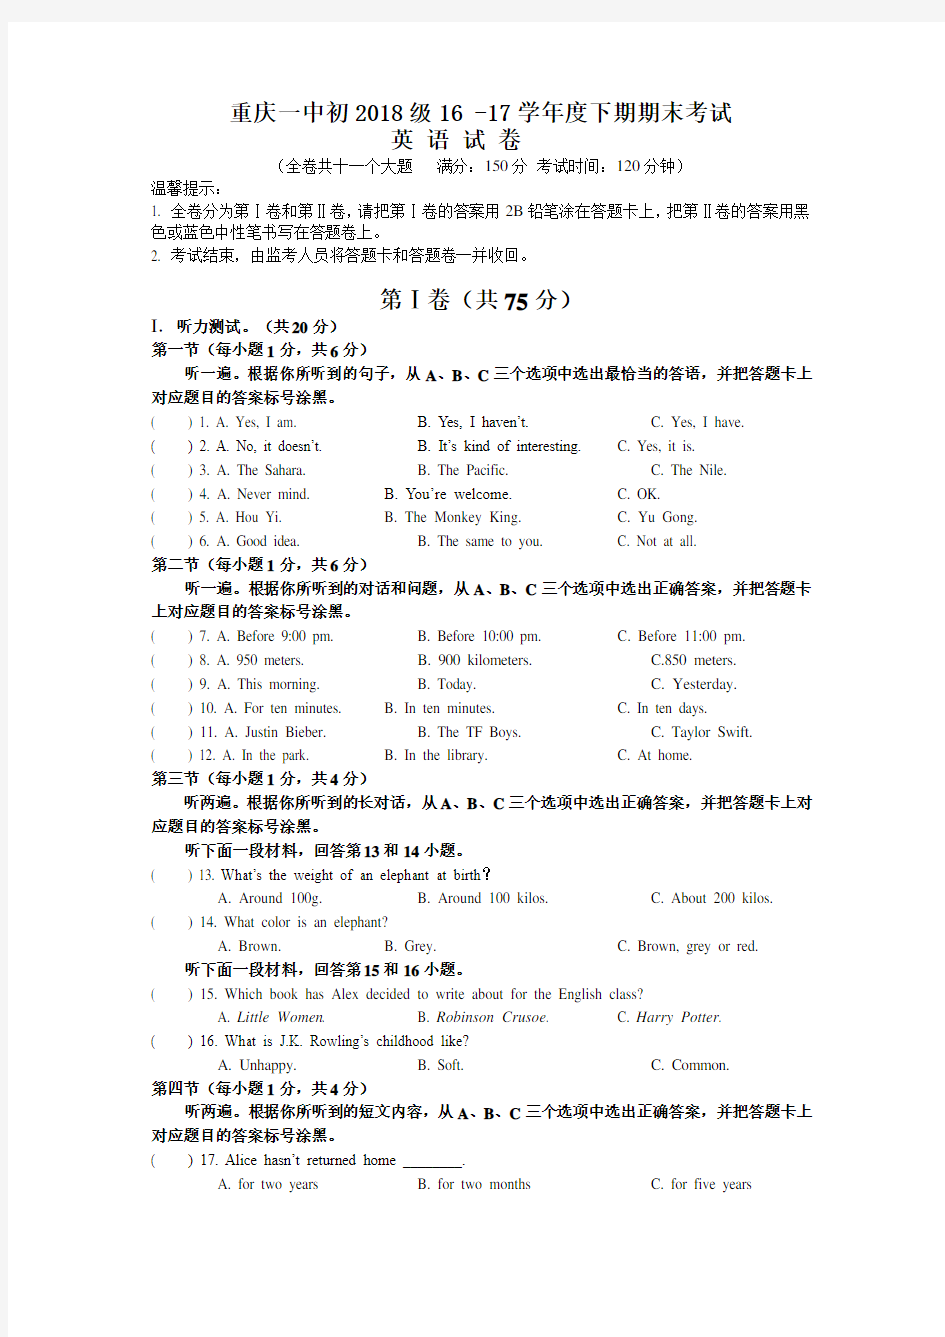 重庆一中 初2018级 八年级下 2016-2017学年度下期 期末考试 英语试卷